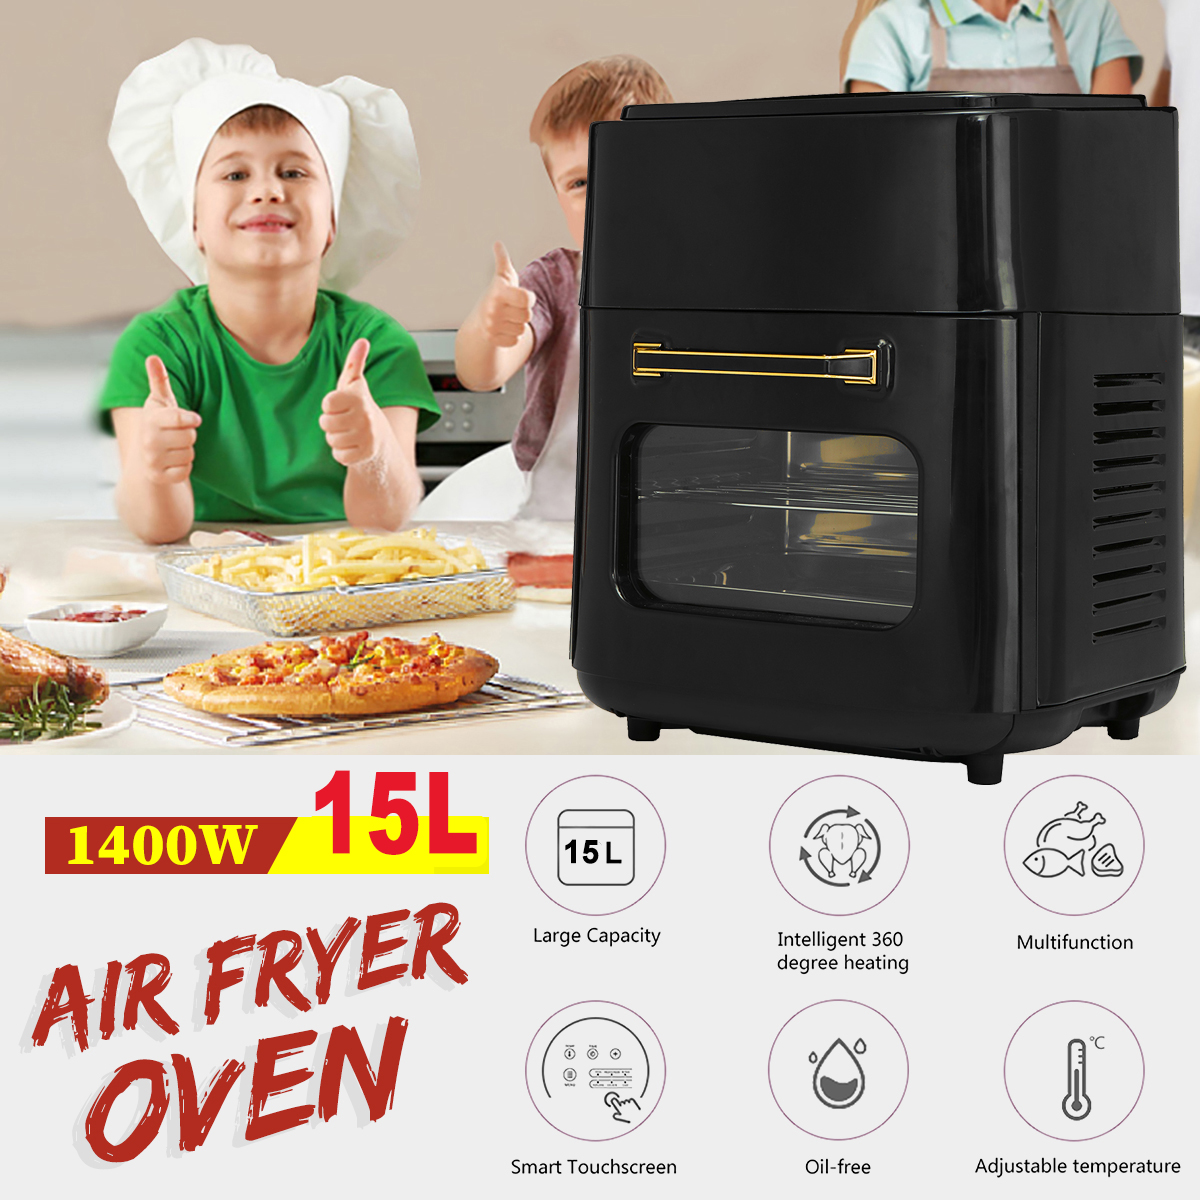 AF5 1400W 220V 15L Air Fryer 360° Surround Heating Digital LCD Display Hot Oven Cooker with Removable Dishwasher Safety Basket